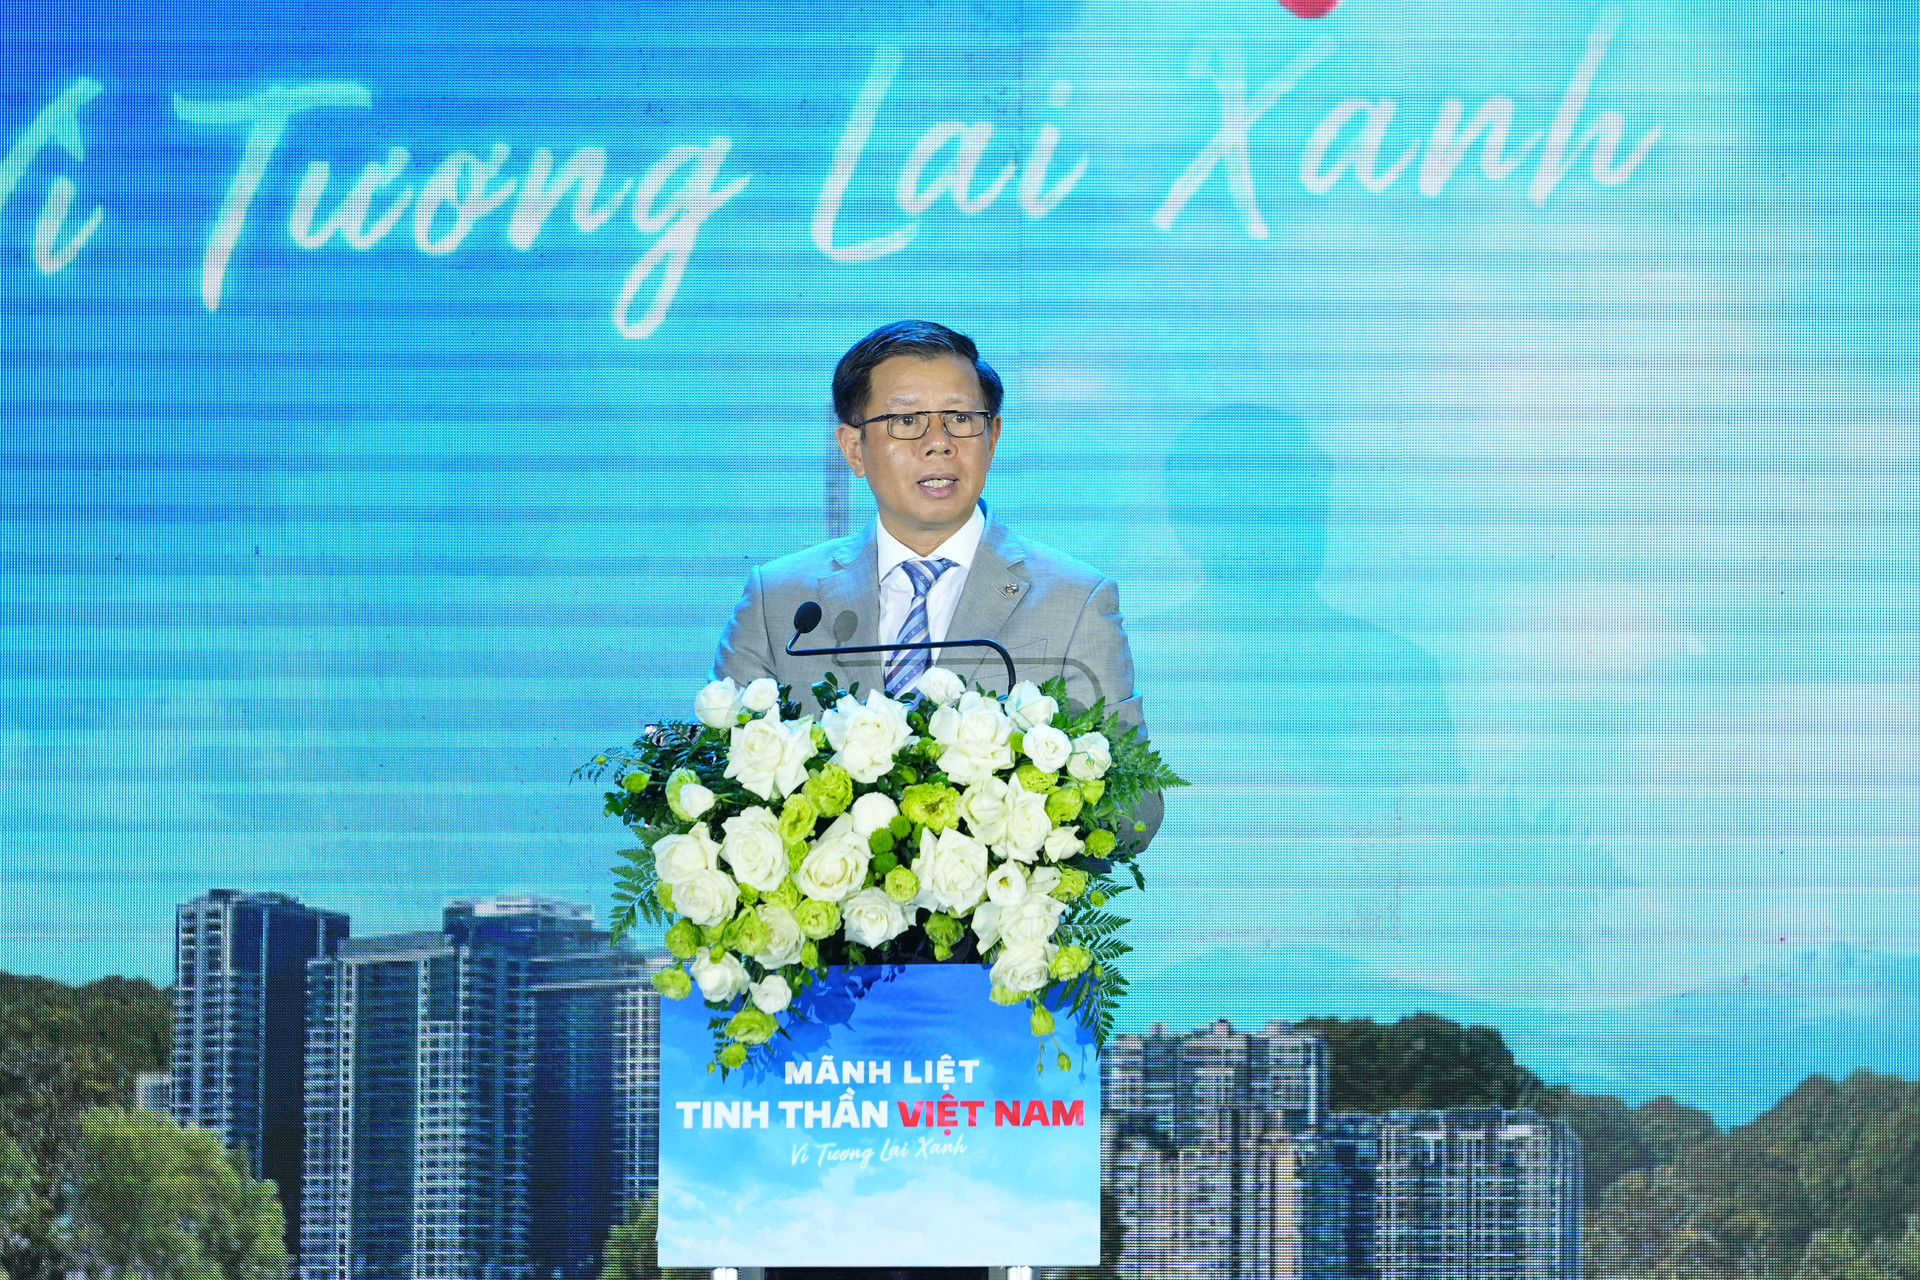 Ông Nguyễn Việt Quang - Phó Chủ tịch kiêm Tổng giám đốc Tập đoàn Vingroup.